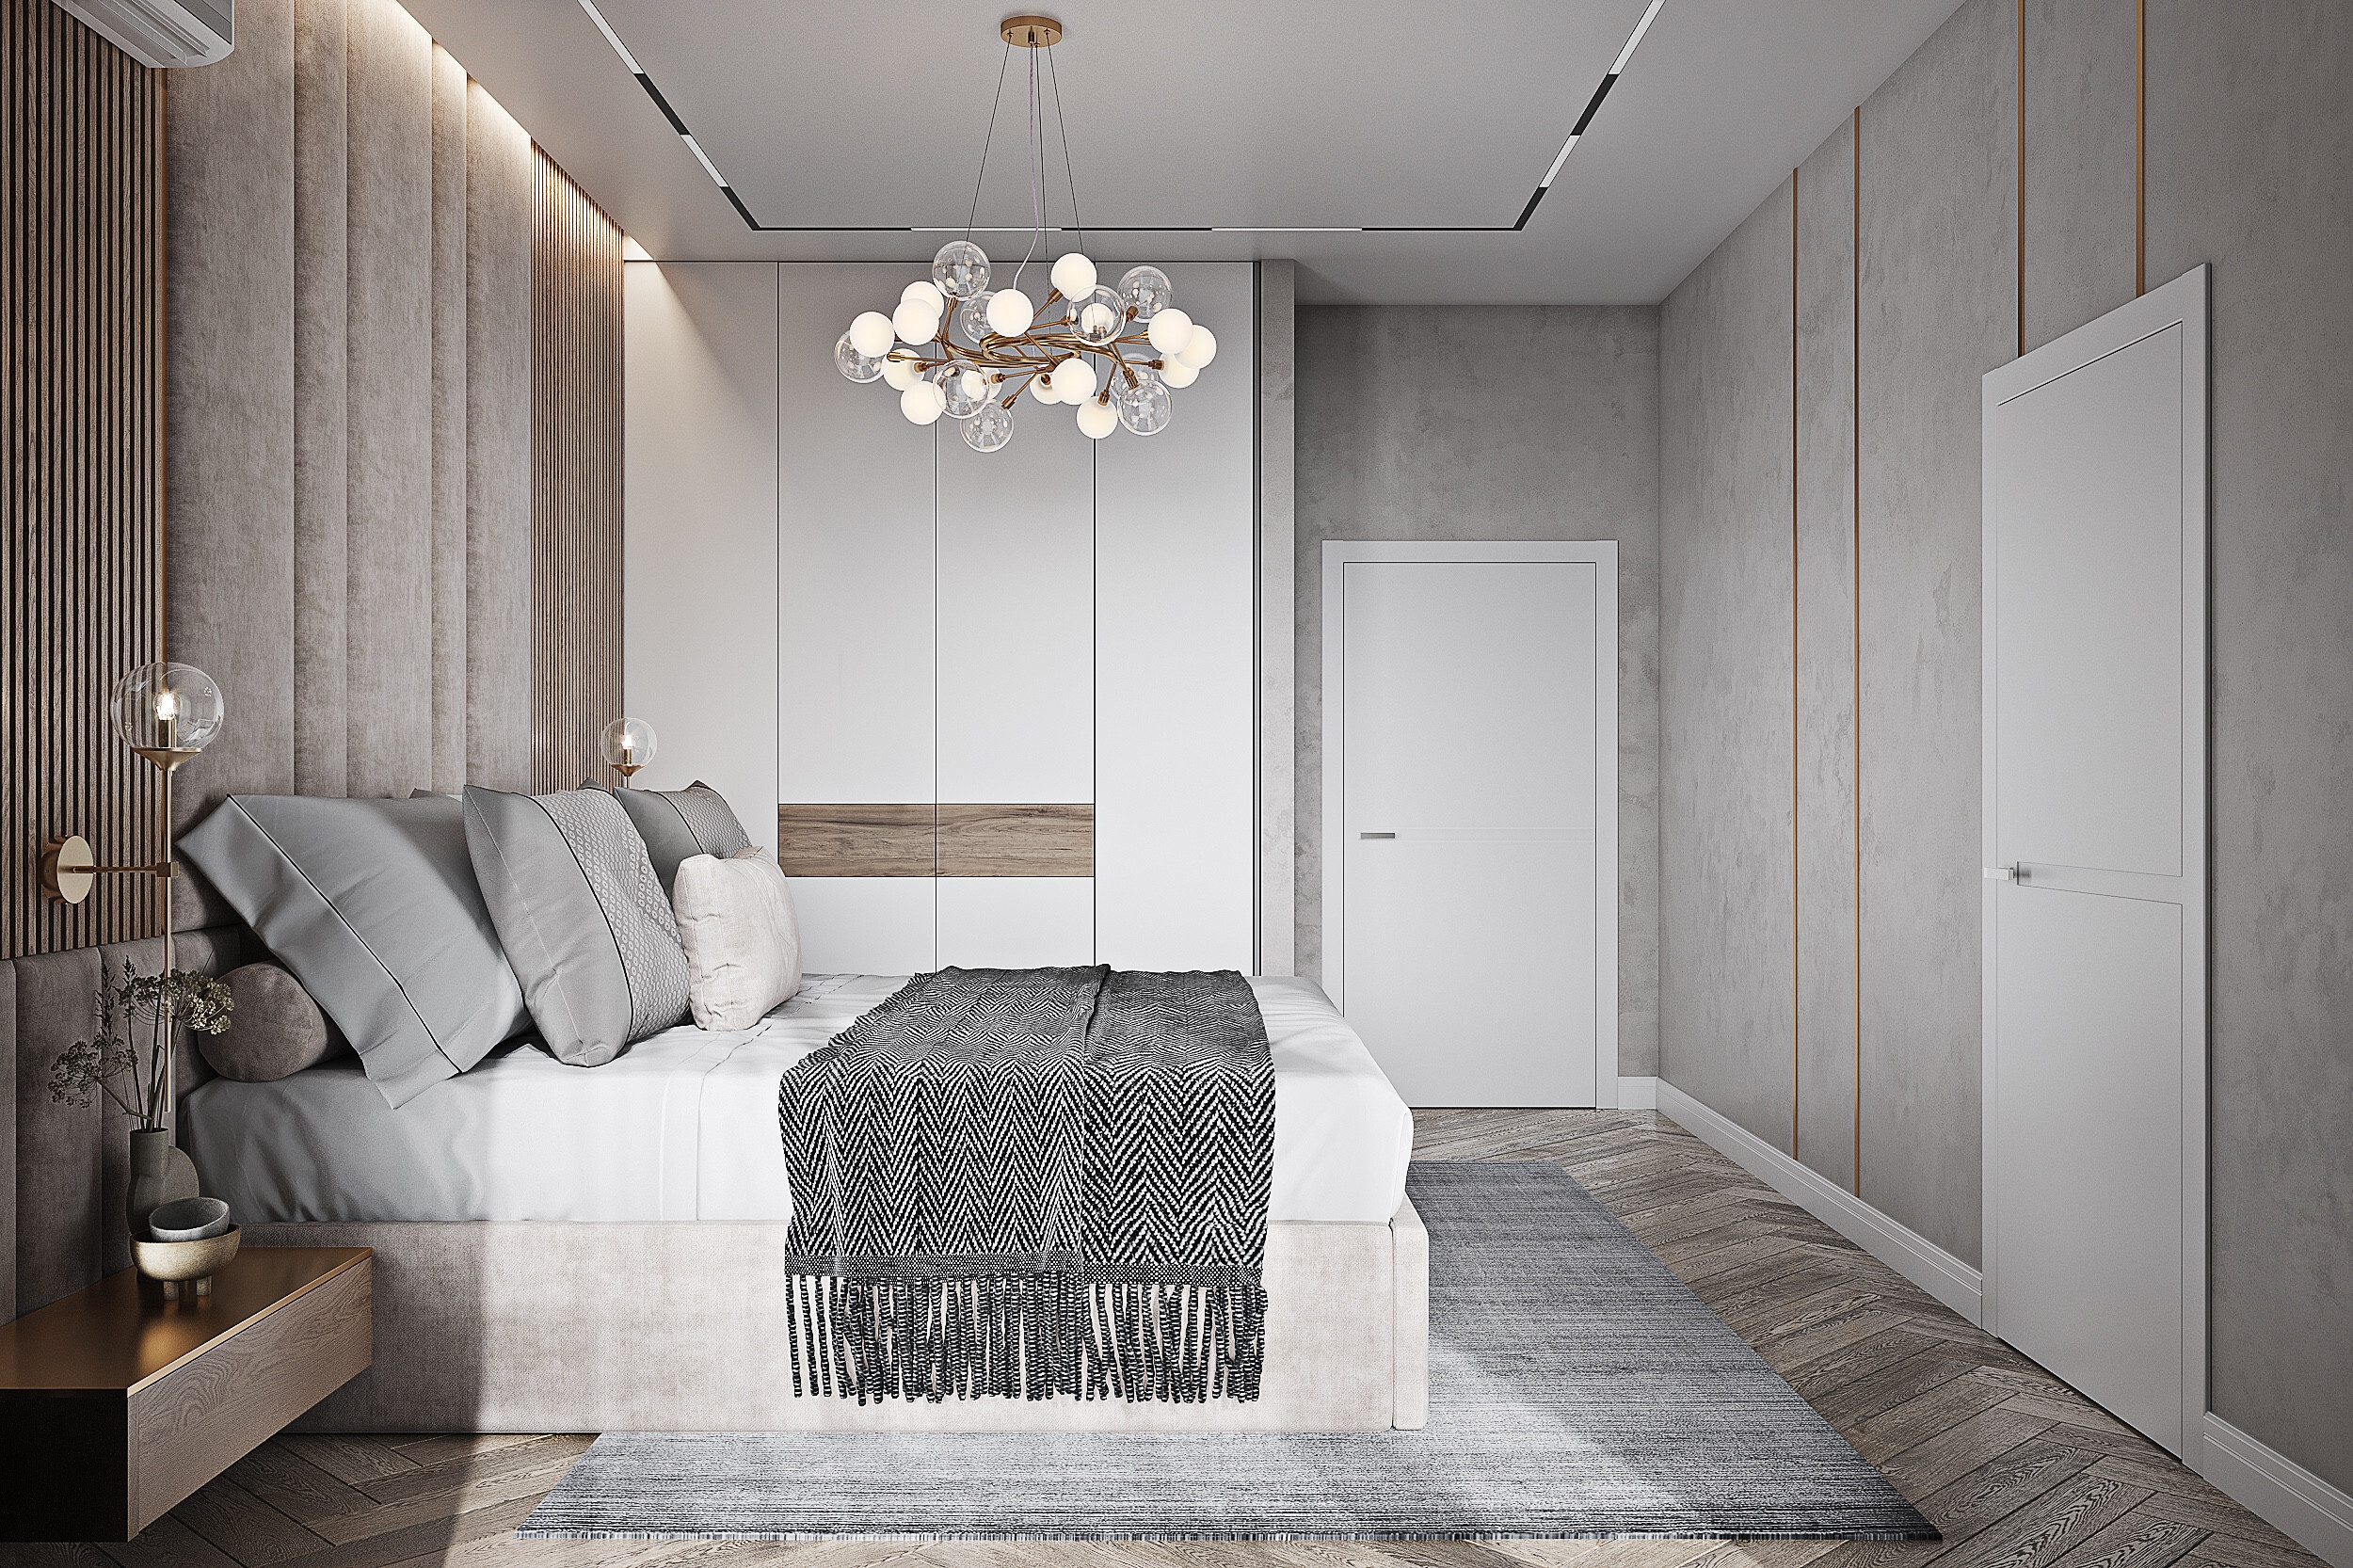 Интерьер спальни cветильниками над кроватью в современном стиле и в стиле лофт